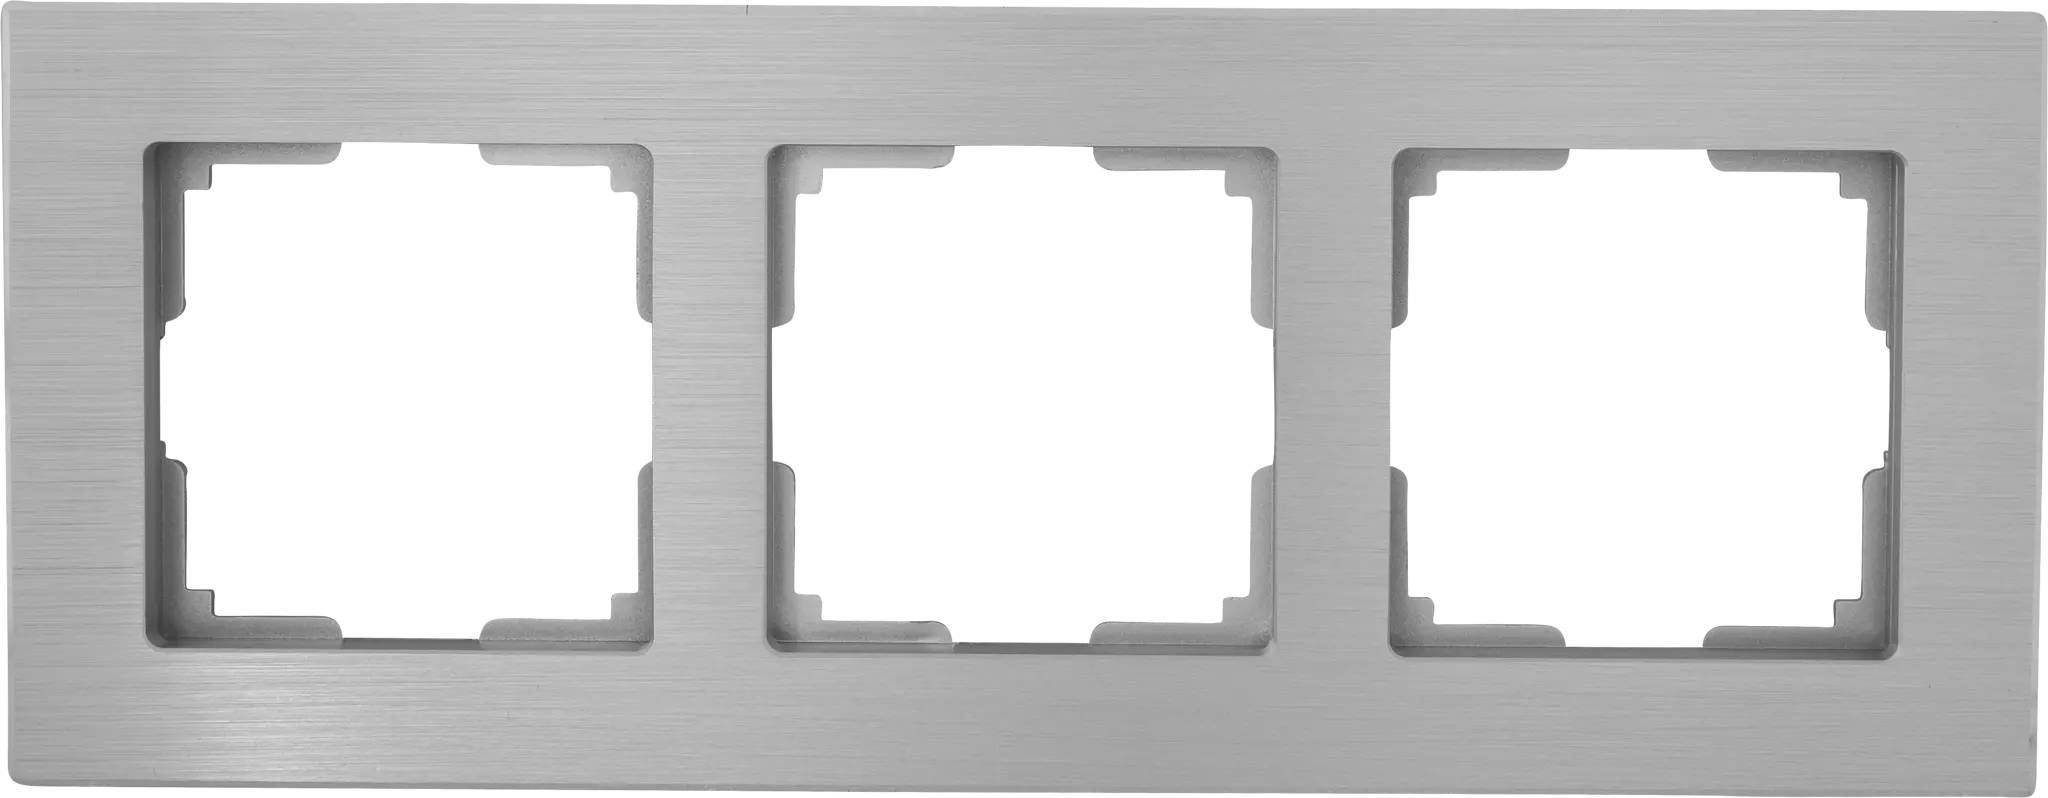 Рамка для розеток и выключателей Werkel Aluminium 3 поста, металл, цвет алюминий рамка на 4 поста werkel aluminium w0041708 4690389158124